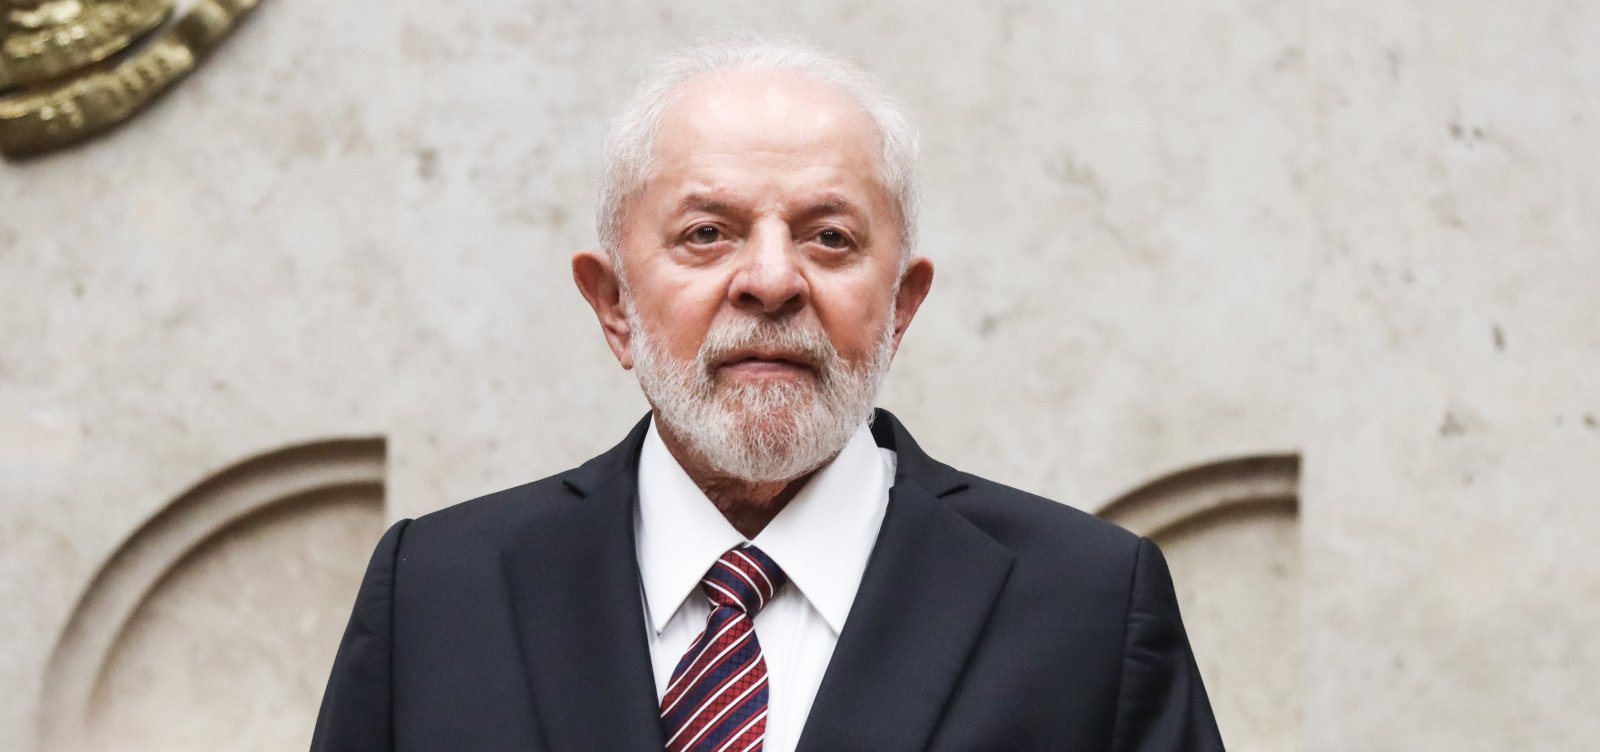 Durante viagem ao Egito, Lula deve discutir guerra entre Israel e Hamas e assinar acordo na área de bioenergia, diz Itamaraty